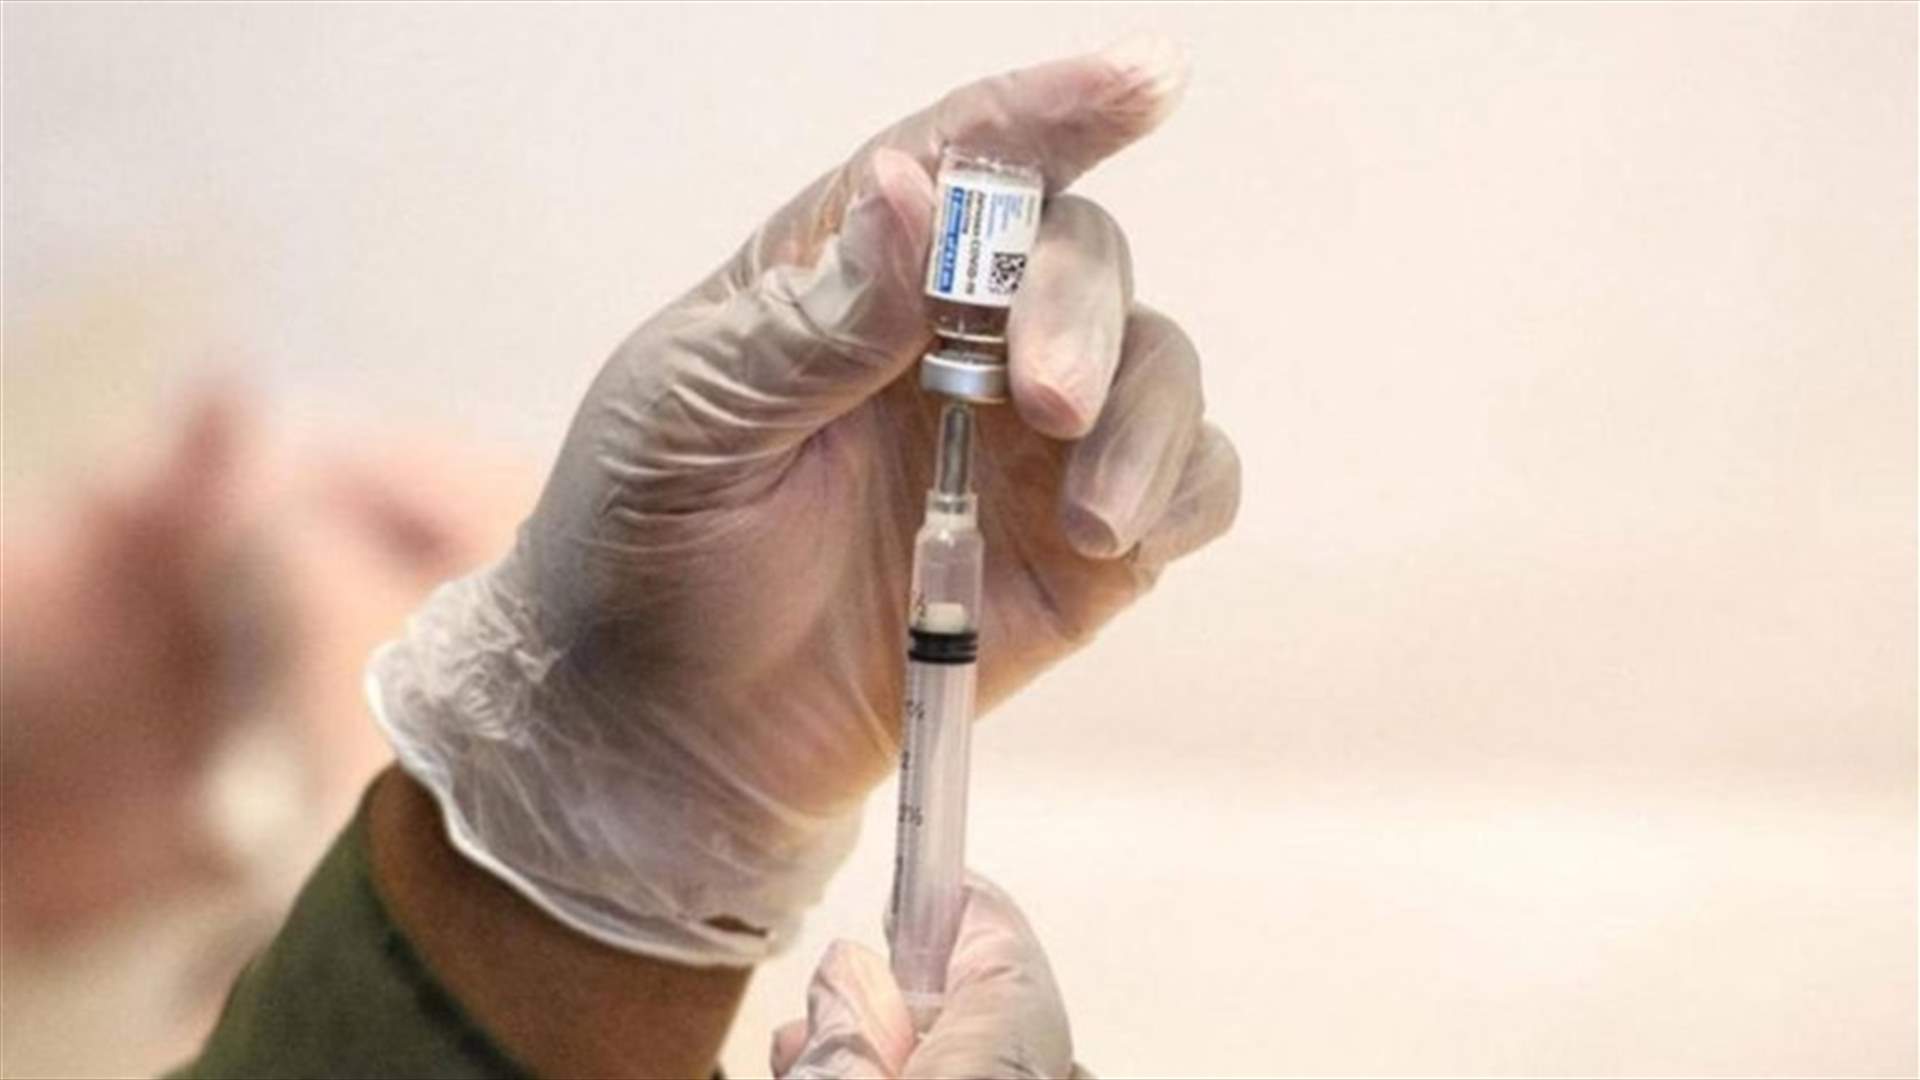 مع اقتراب الخريف... الاتحاد الأوروبي يوقع عقداً للقاح جديد ضدّ كوفيد-19 صُنع في إسبانيا